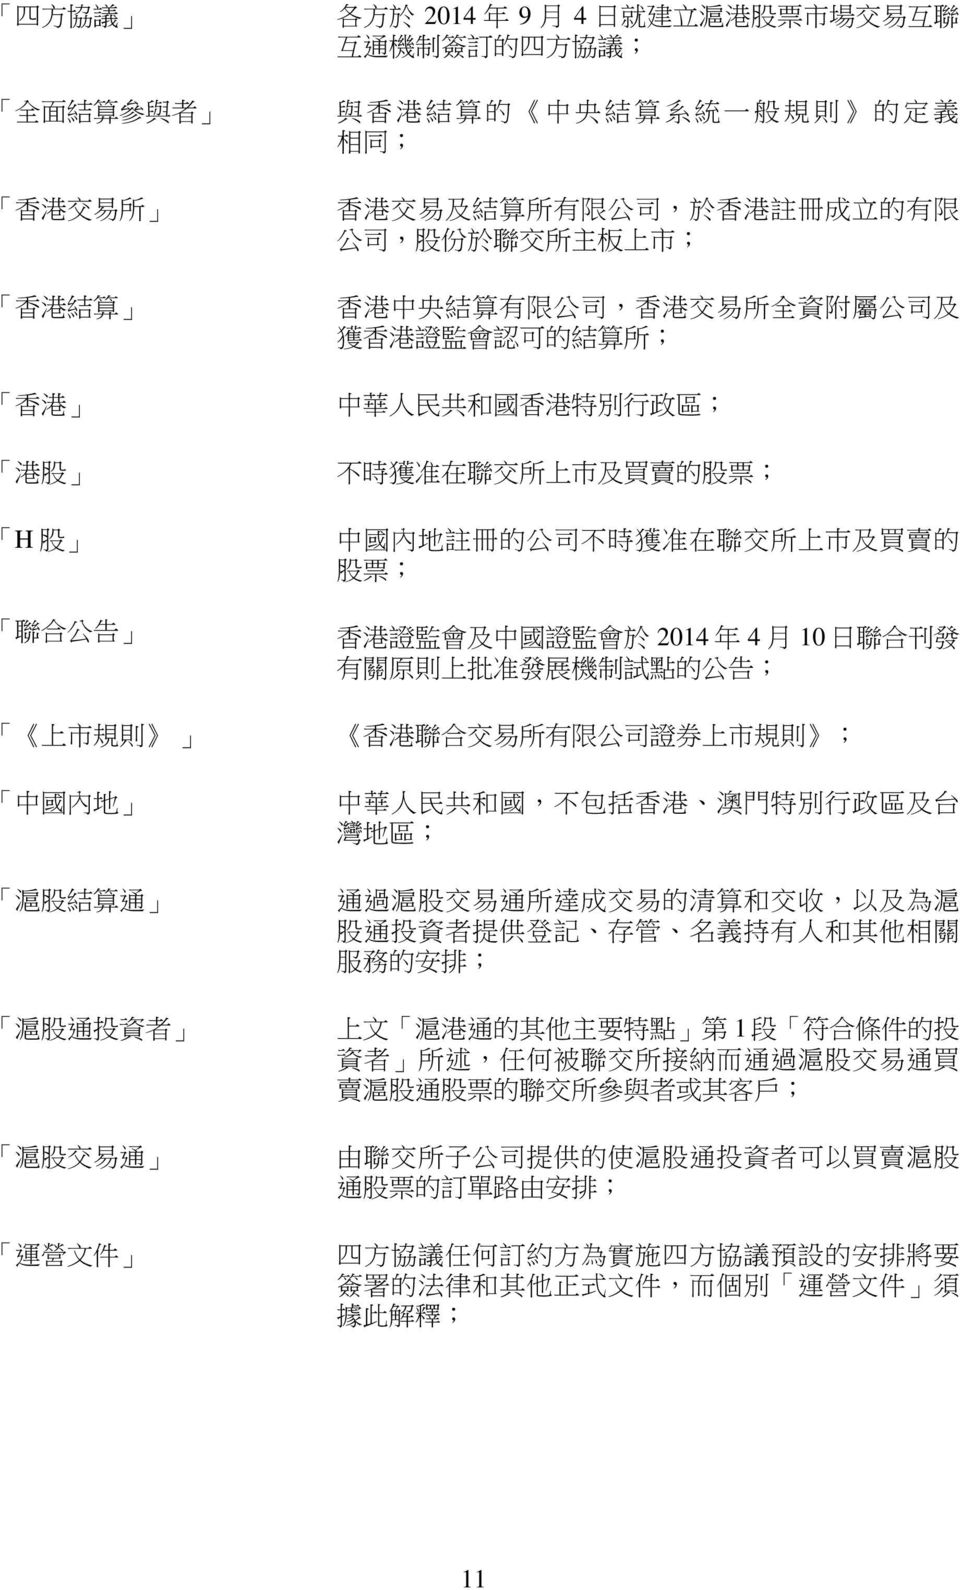 准 在 聯 交 所 上 巿 及 買 賣 的 股 票 ; 聯 合 公 告 香 港 證 監 會 及 中 國 證 監 會 於 2014 年 4 月 10 日 聯 合 刊 發 有 關 原 則 上 批 准 發 展 機 制 試 點 的 公 告 ; 上 市 規 則 香 港 聯 合 交 易 所 有 限 公 司 證 券 上 市 規 則 ; 中 國 內 地 中 華 人 民 共 和 國, 不 包 括 香 港 澳 門